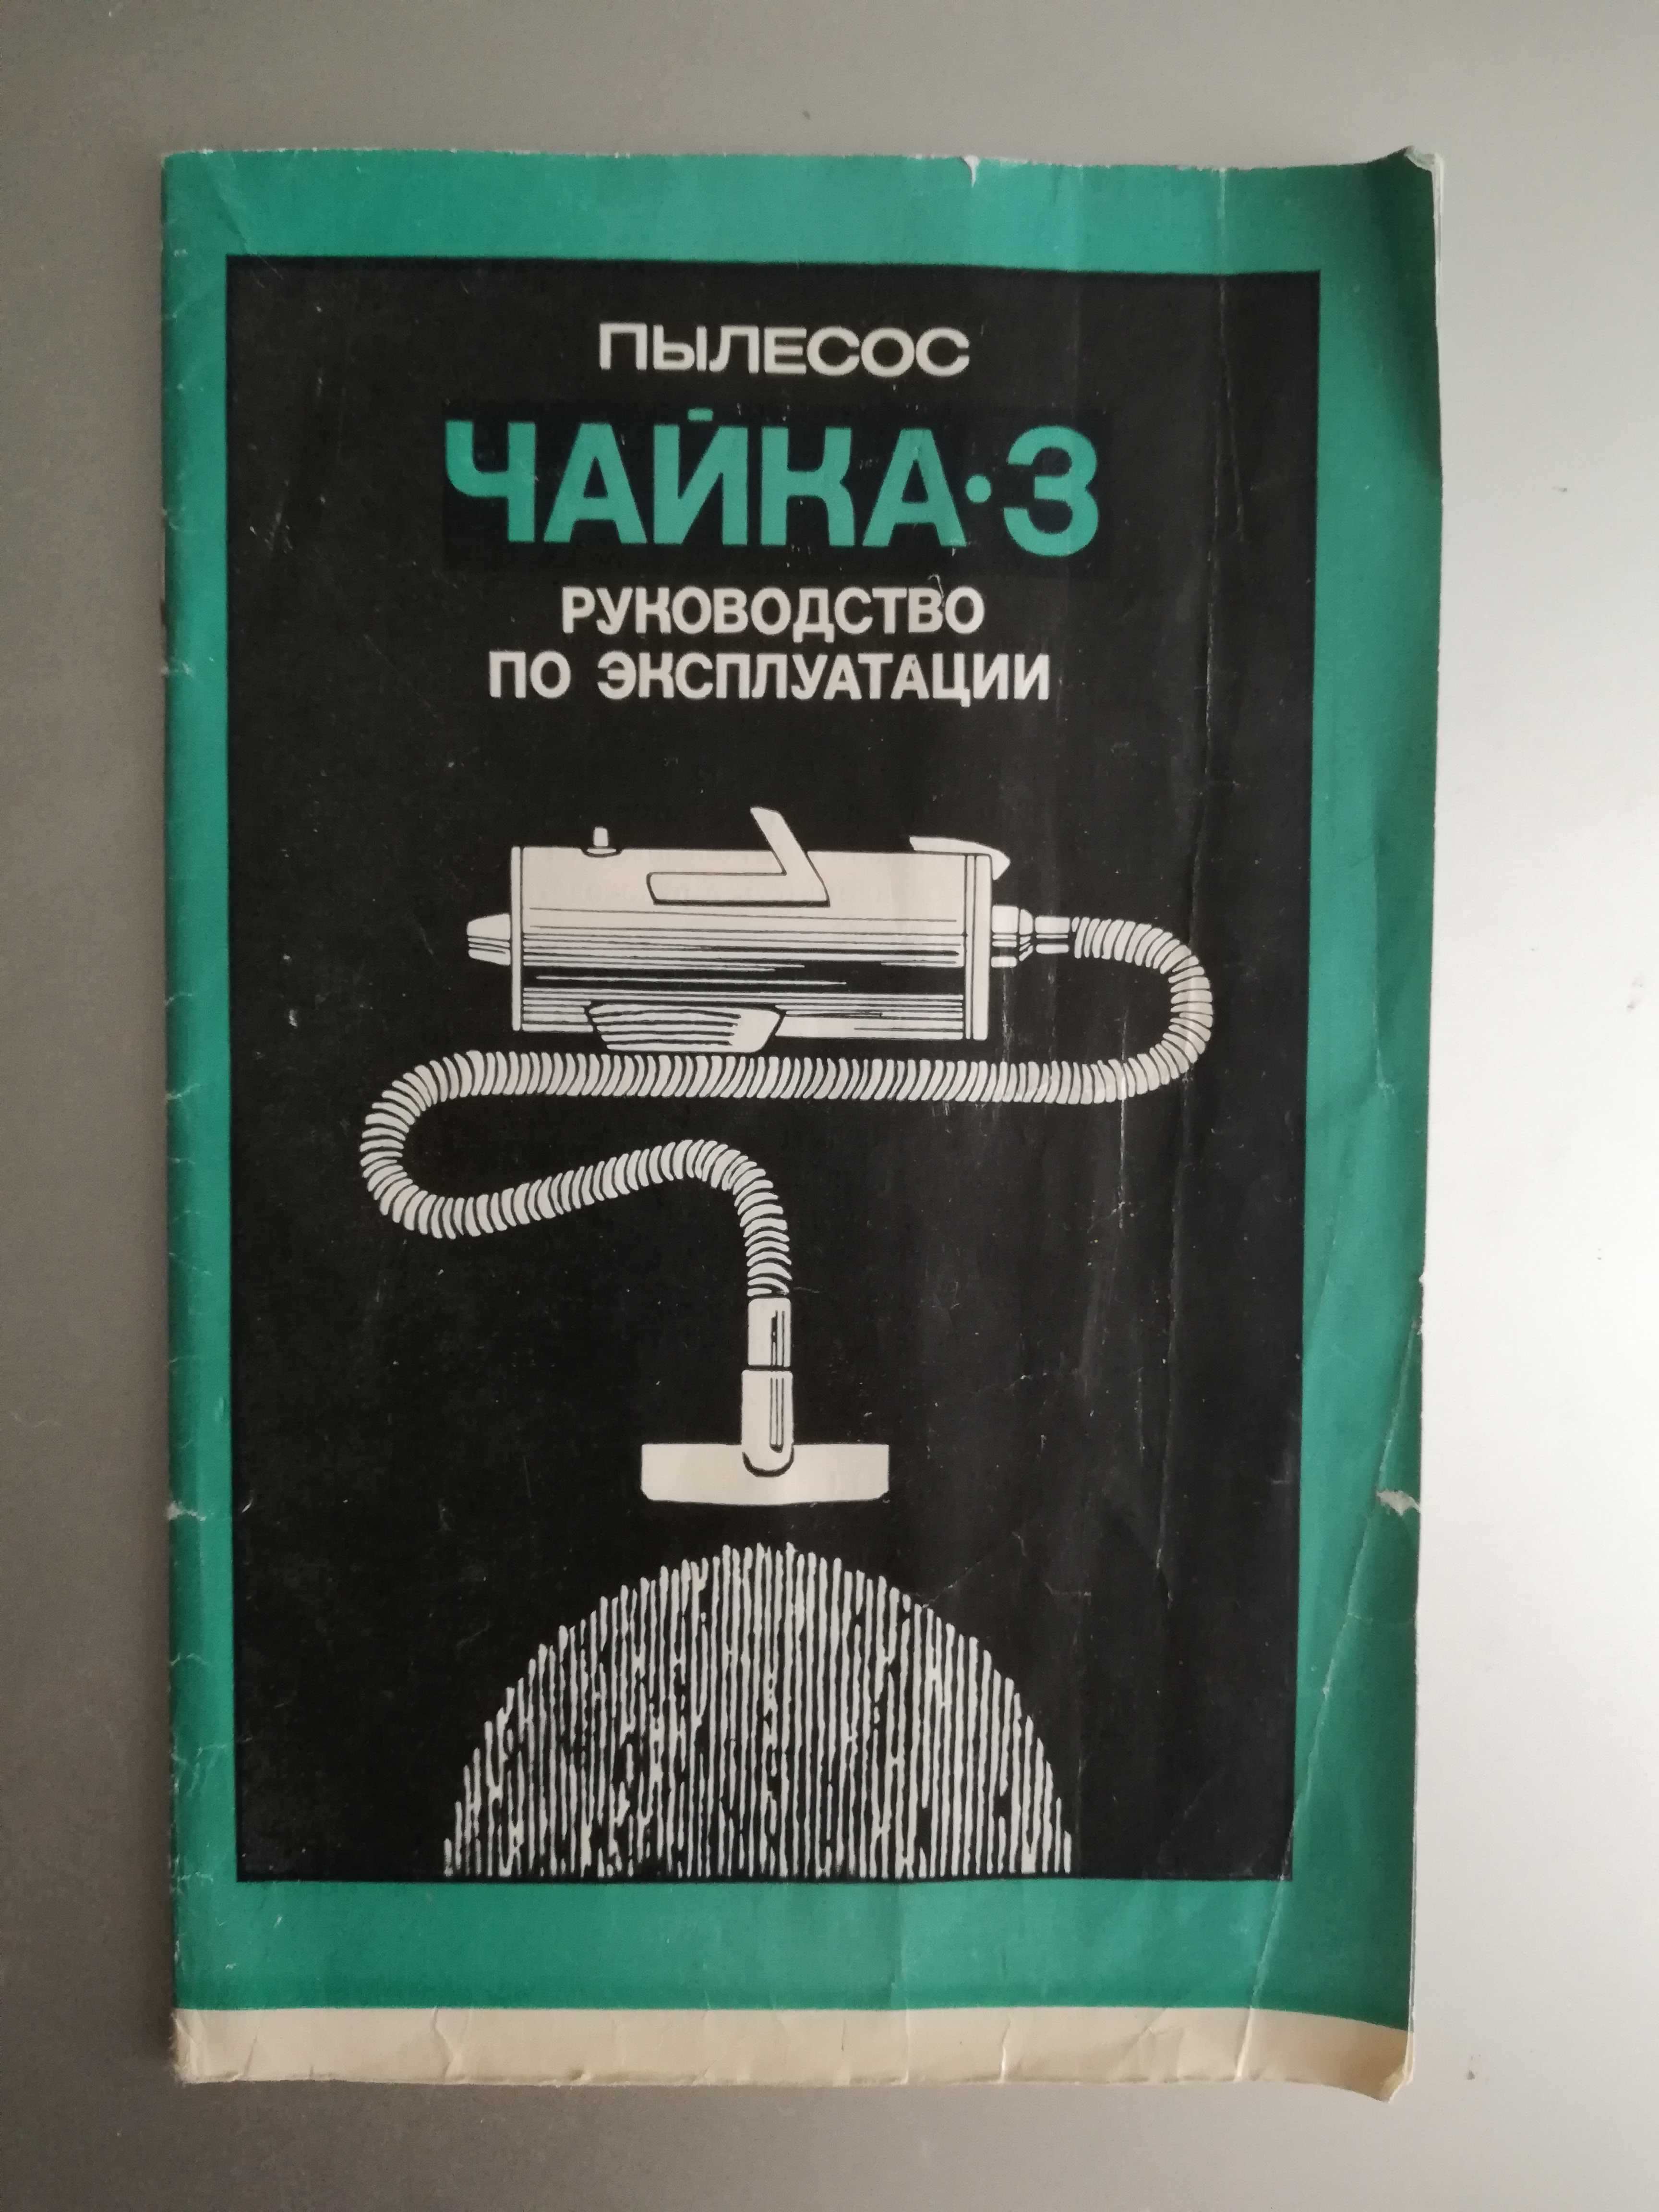 Порохотяг /Пылесос Чайка-3. 1978 года выпуска. Сделано в СССР.